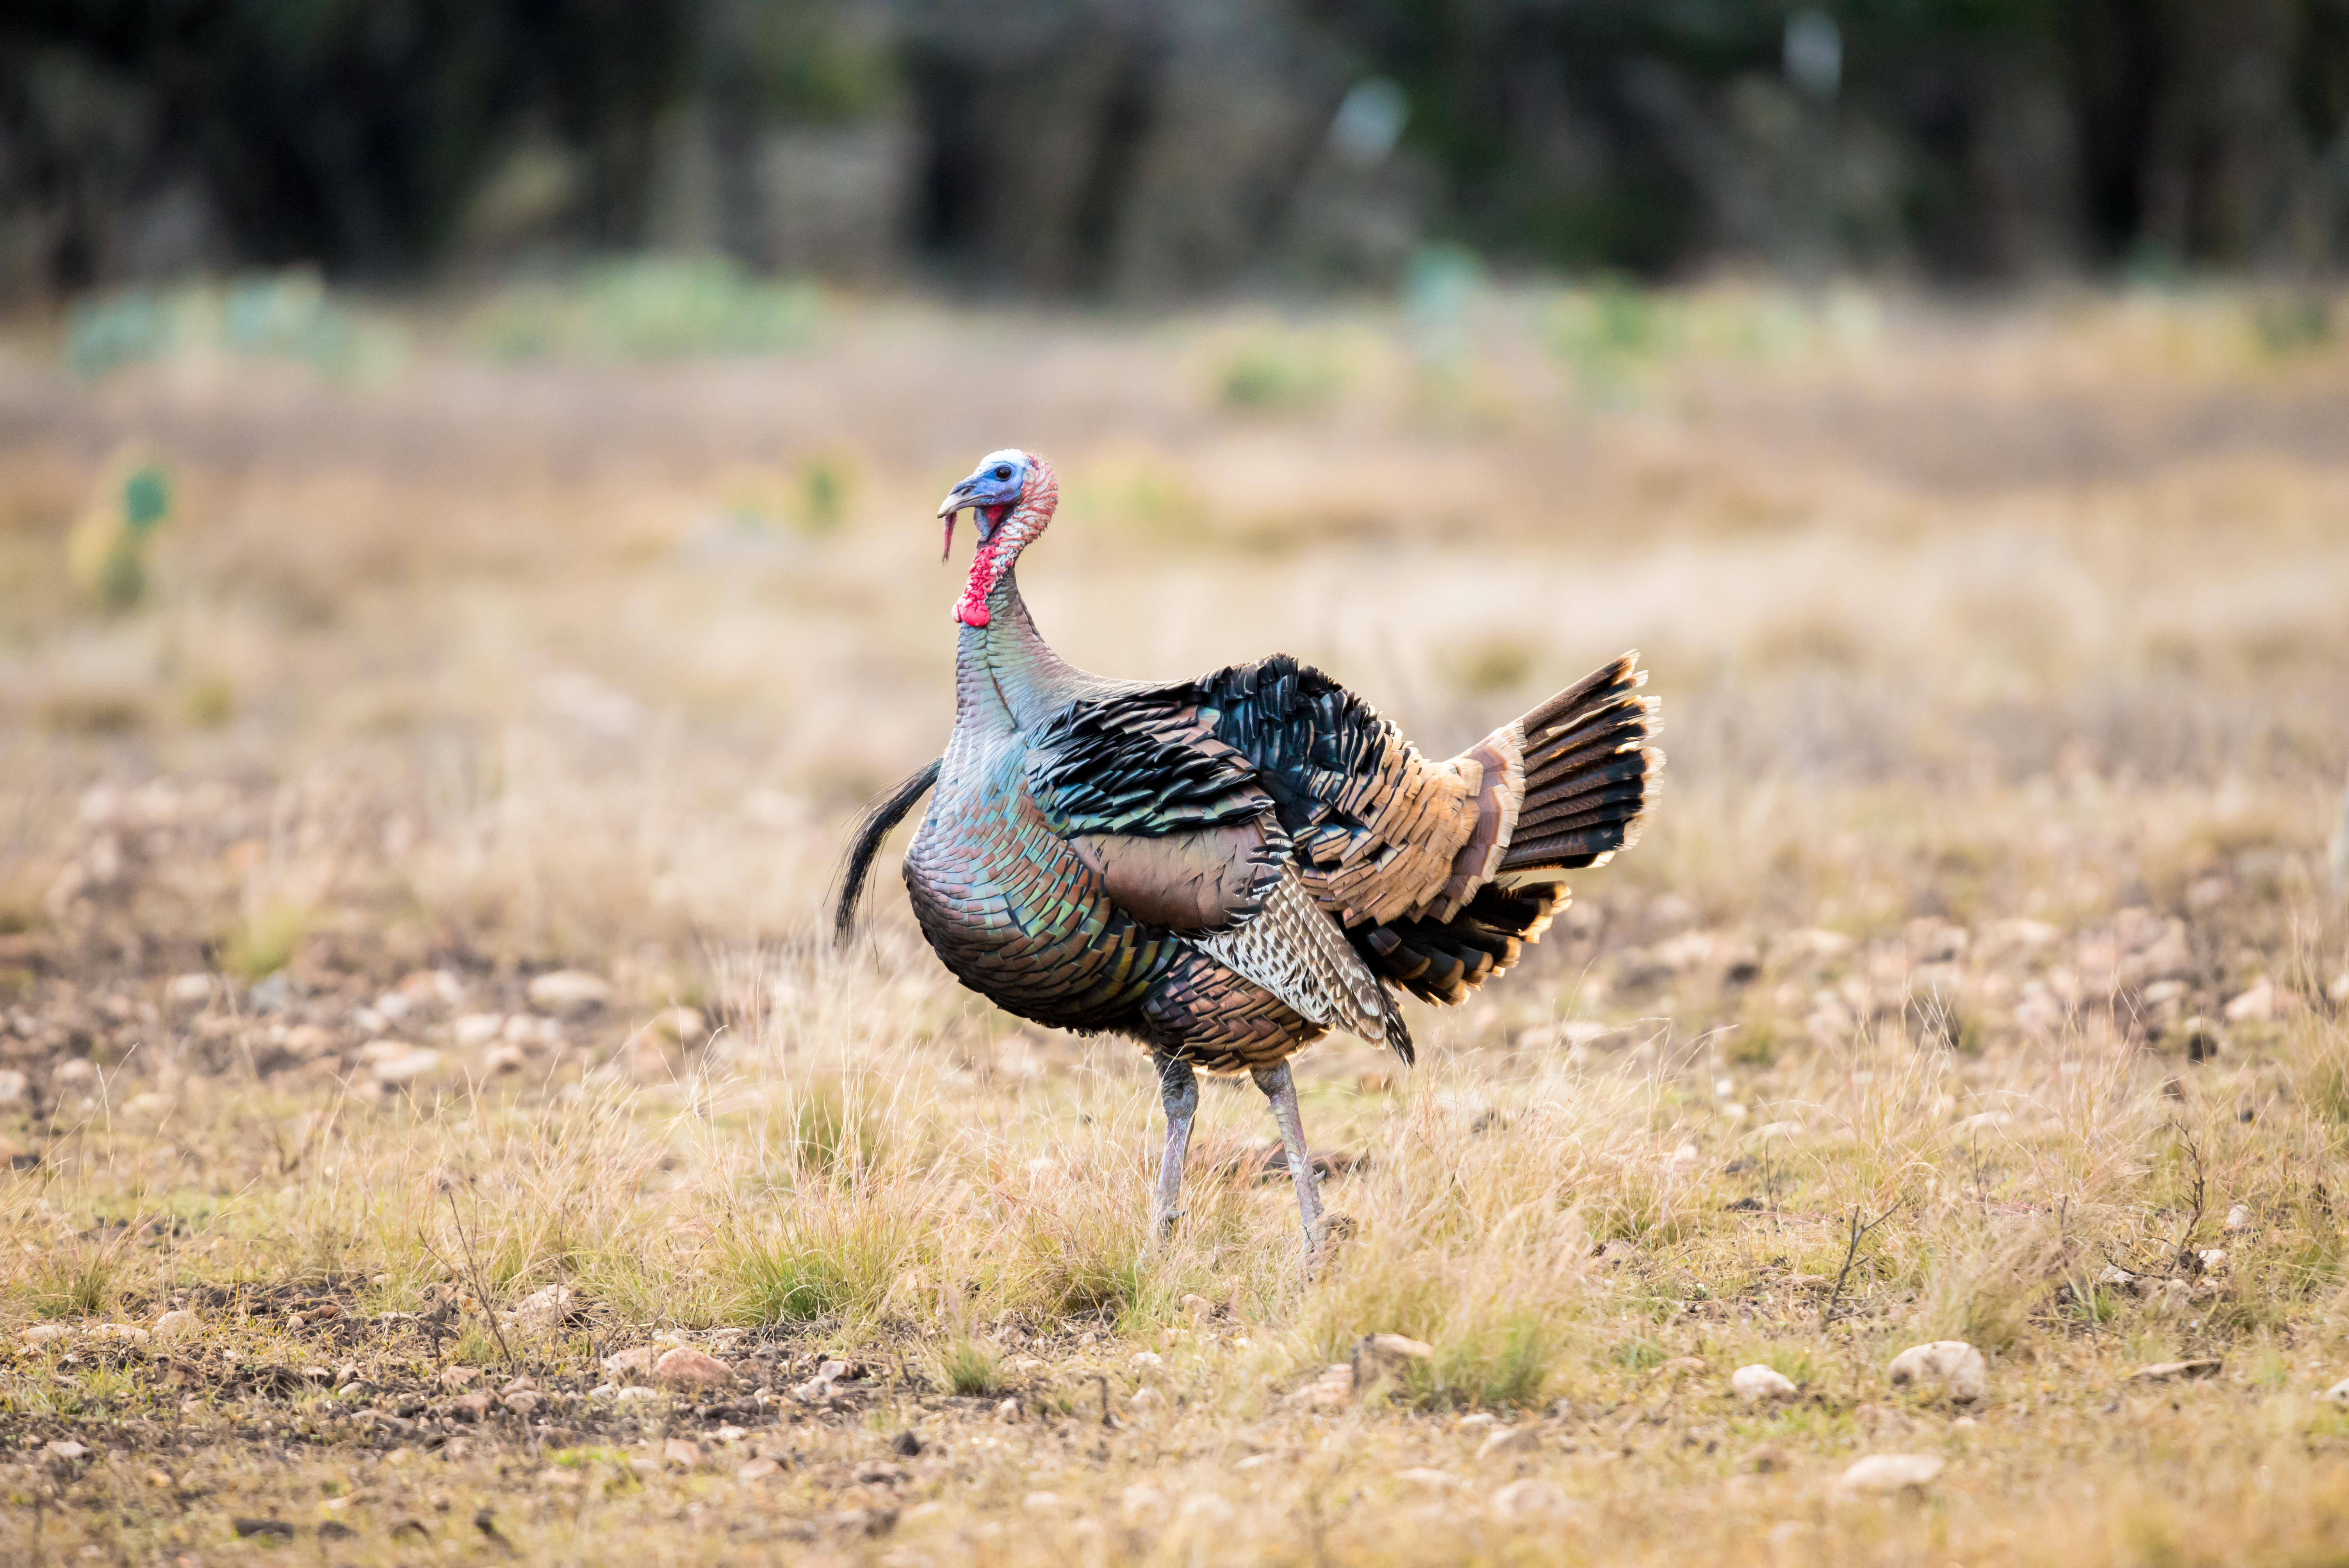 A Rio Grande turkey in a field, hunting turkey concept. 